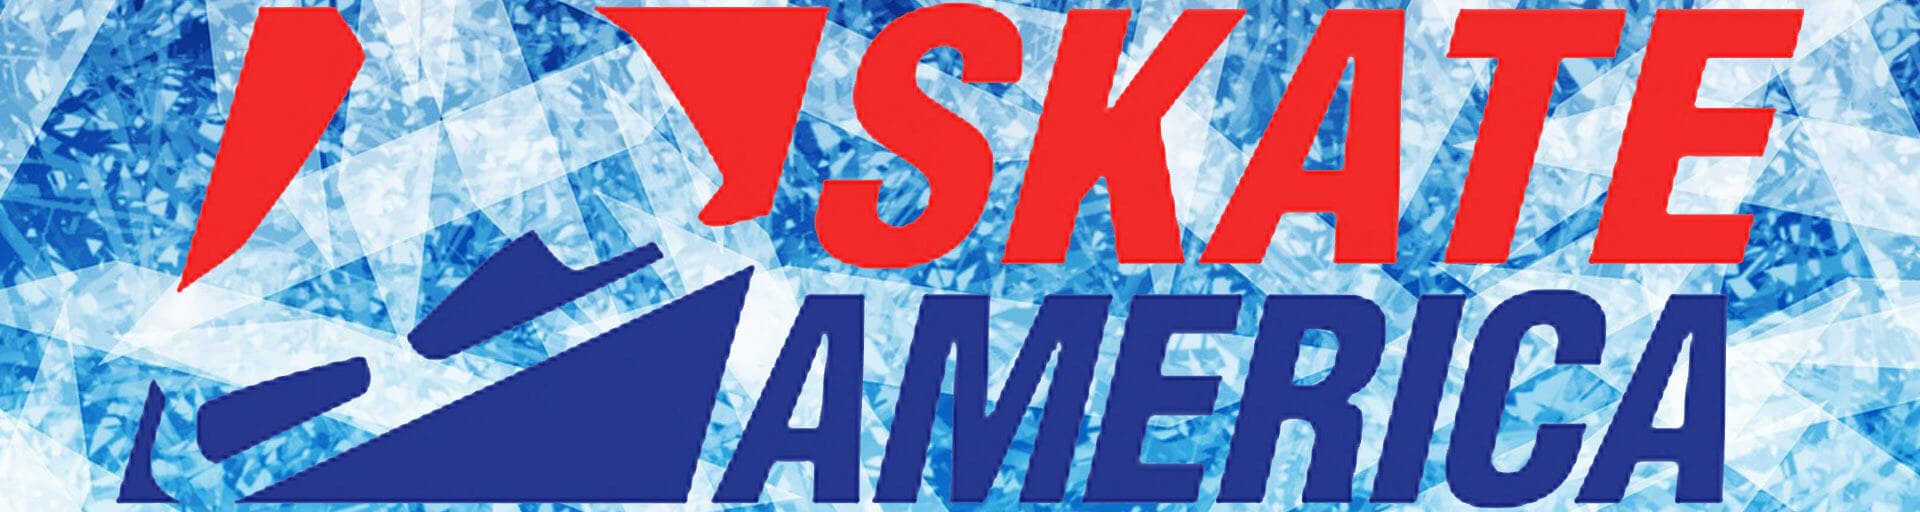 Скейт Америка 2020: участники и расписание